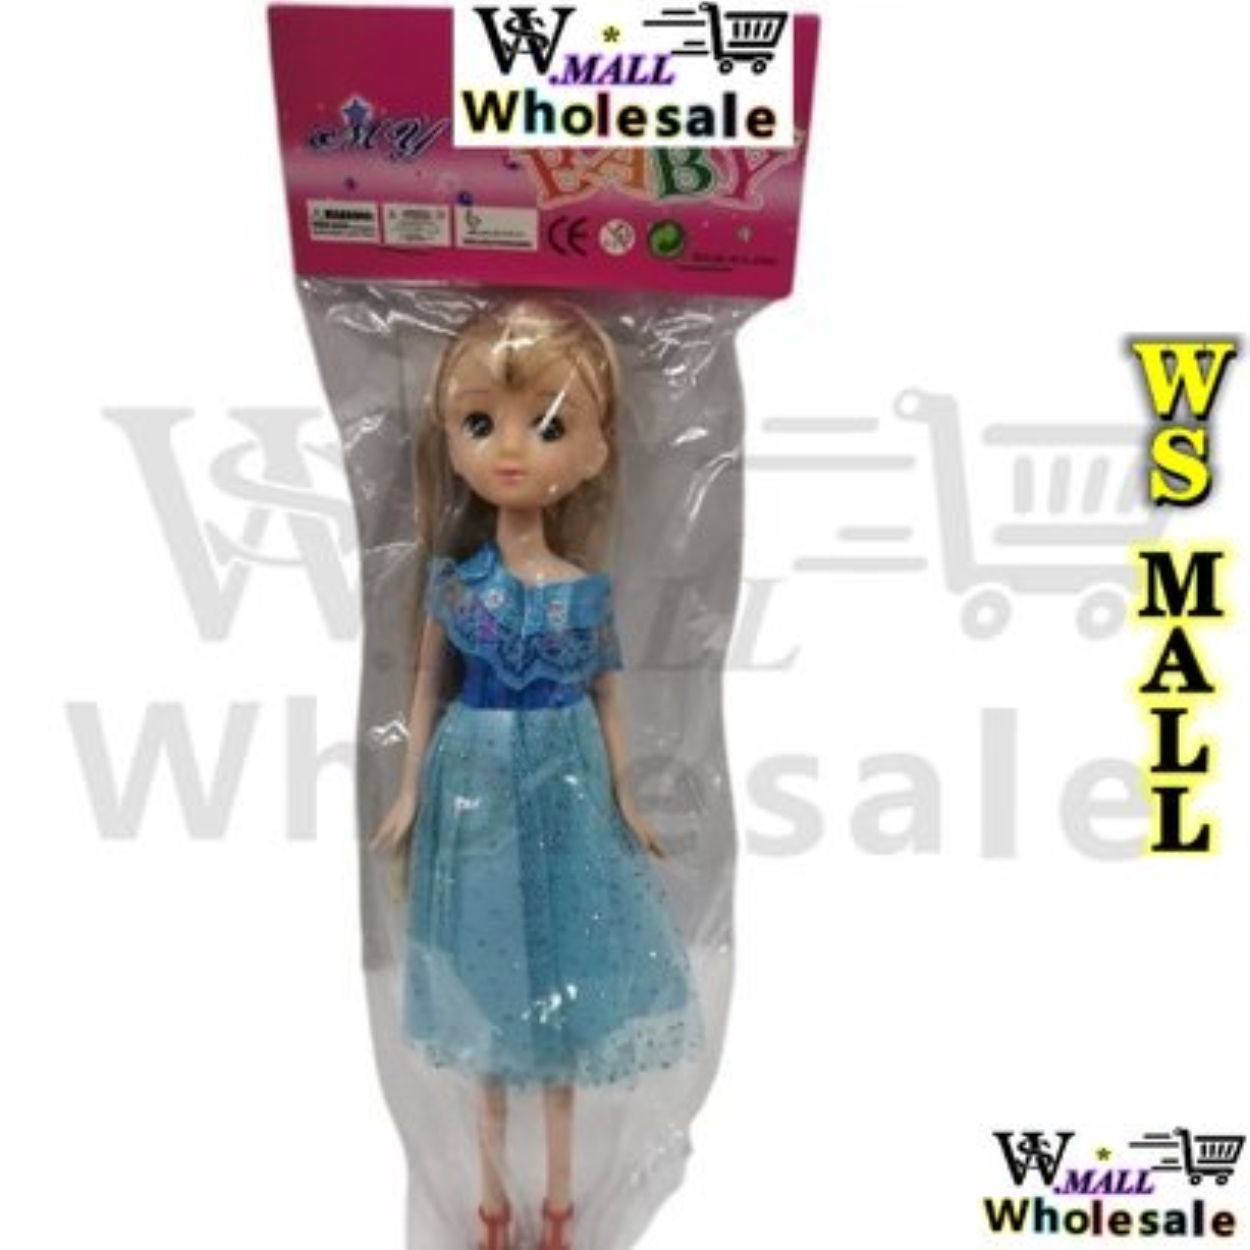 WS MALL TOY girl toy BODEGA ️ Educational toys Kitchen toys mini